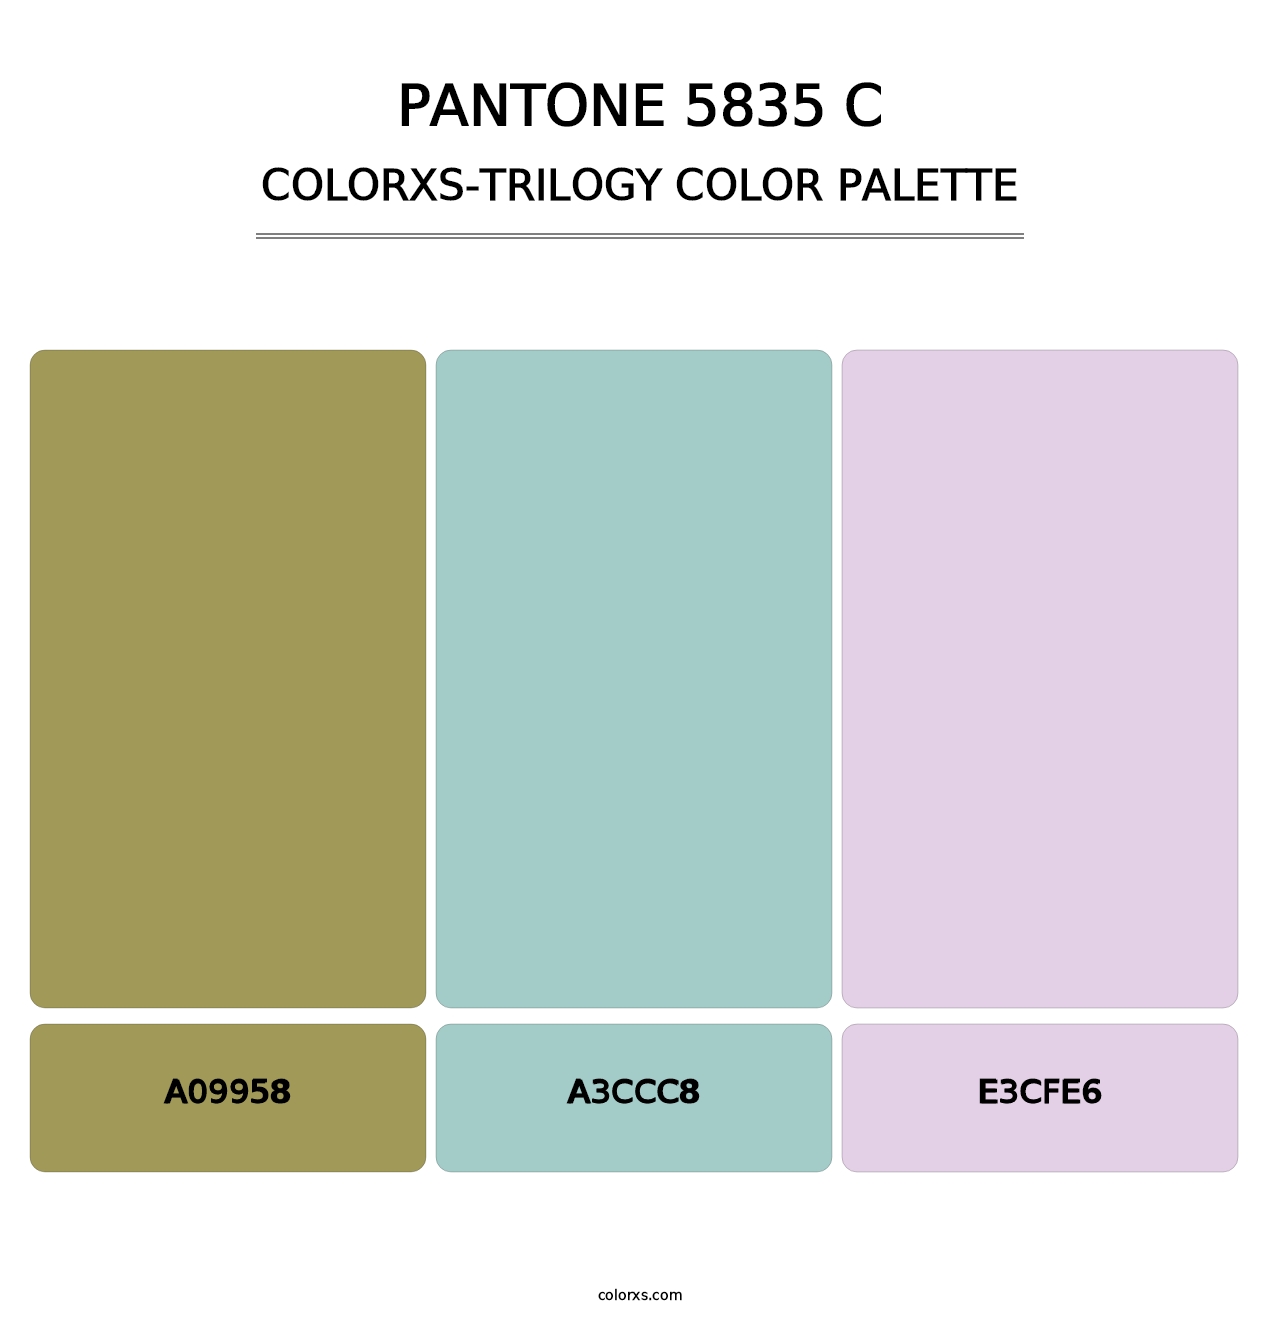 PANTONE 5835 C - Colorxs Trilogy Palette